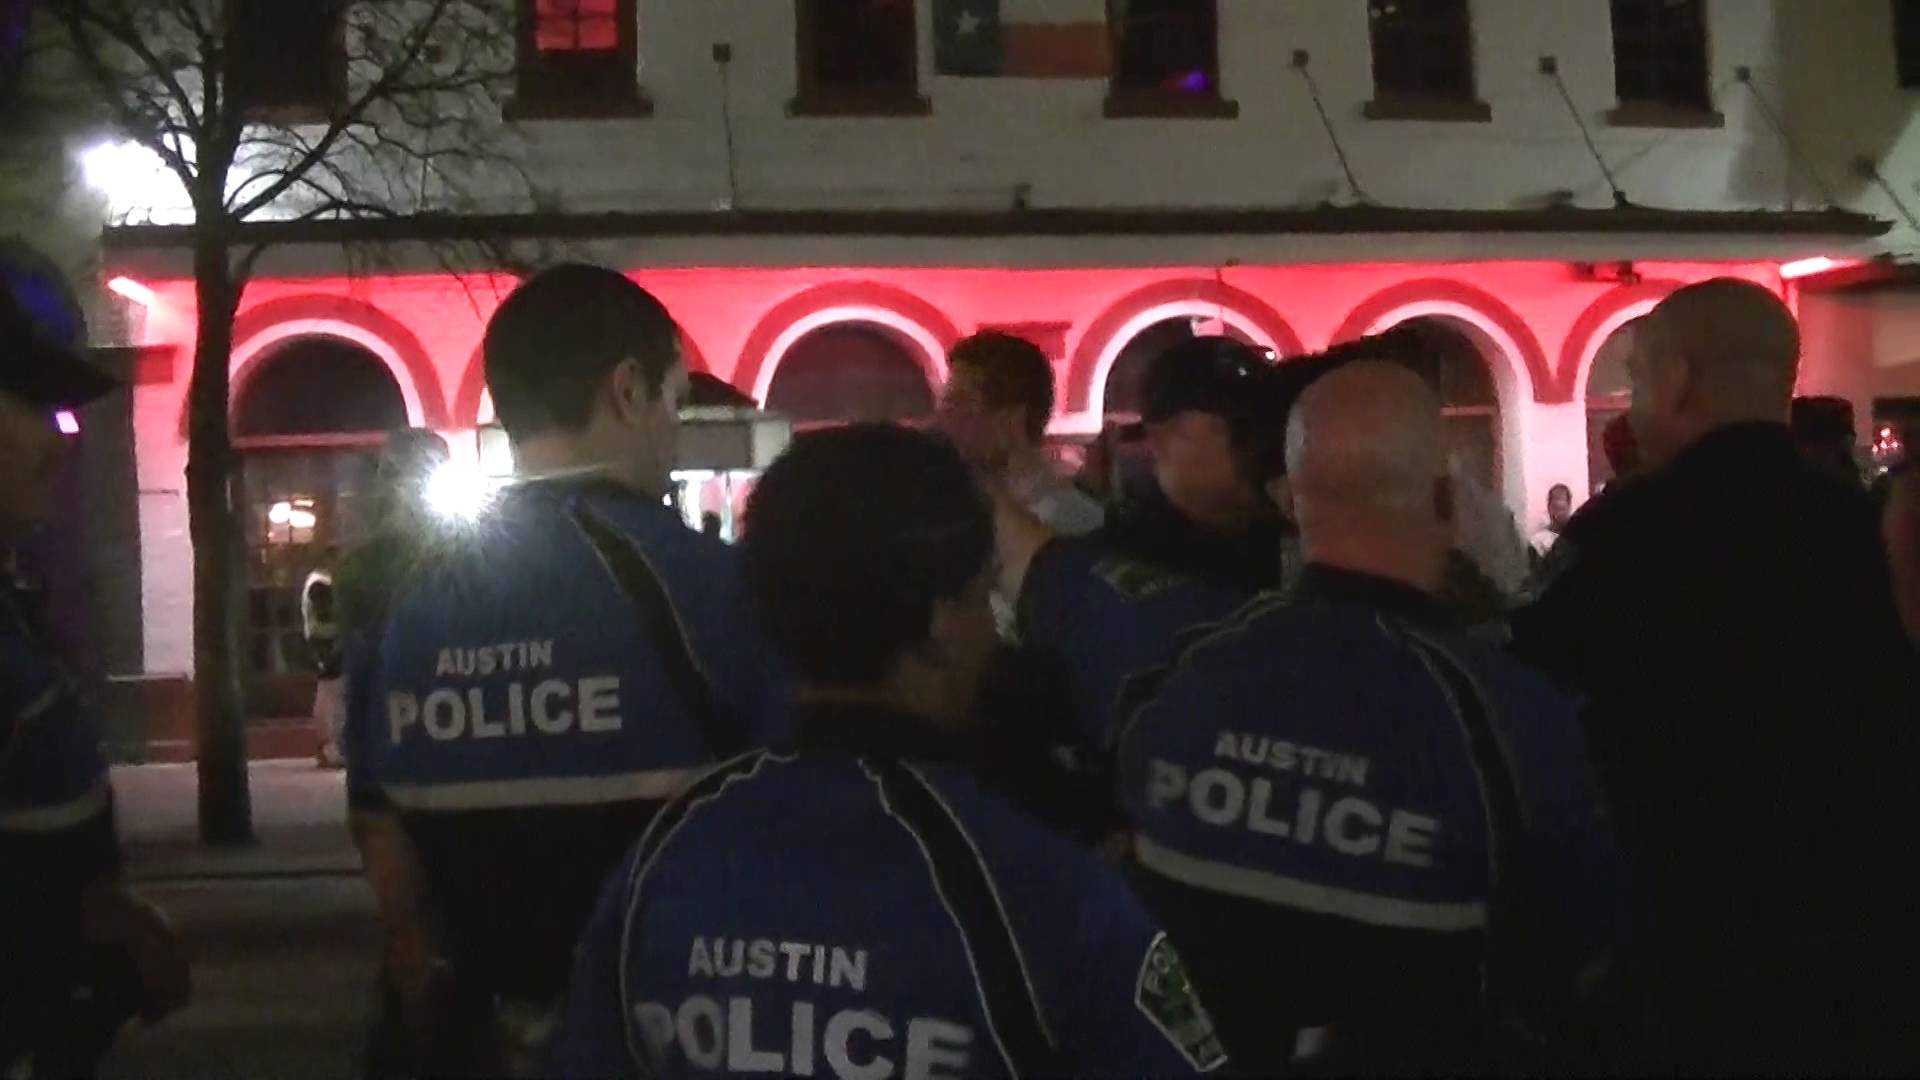 Austin Police